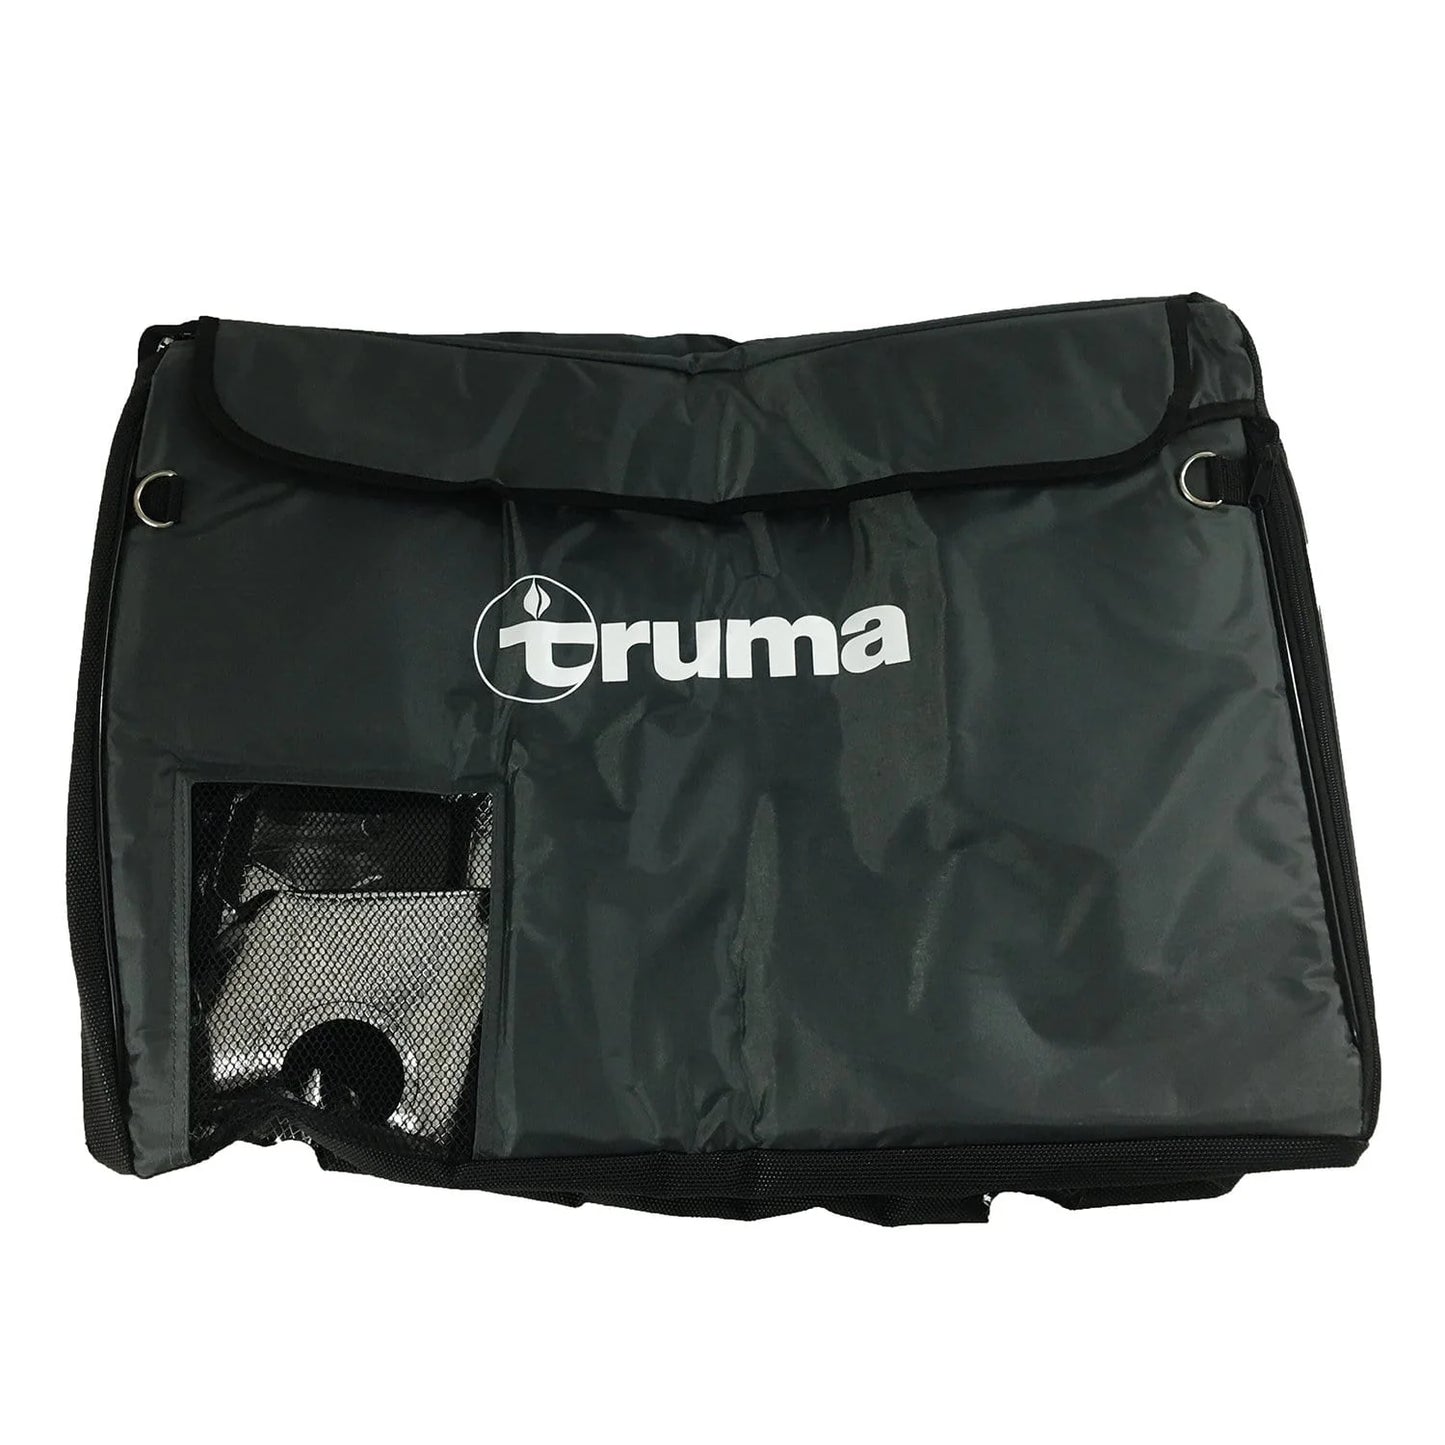 Truma Cooler Cover - C36